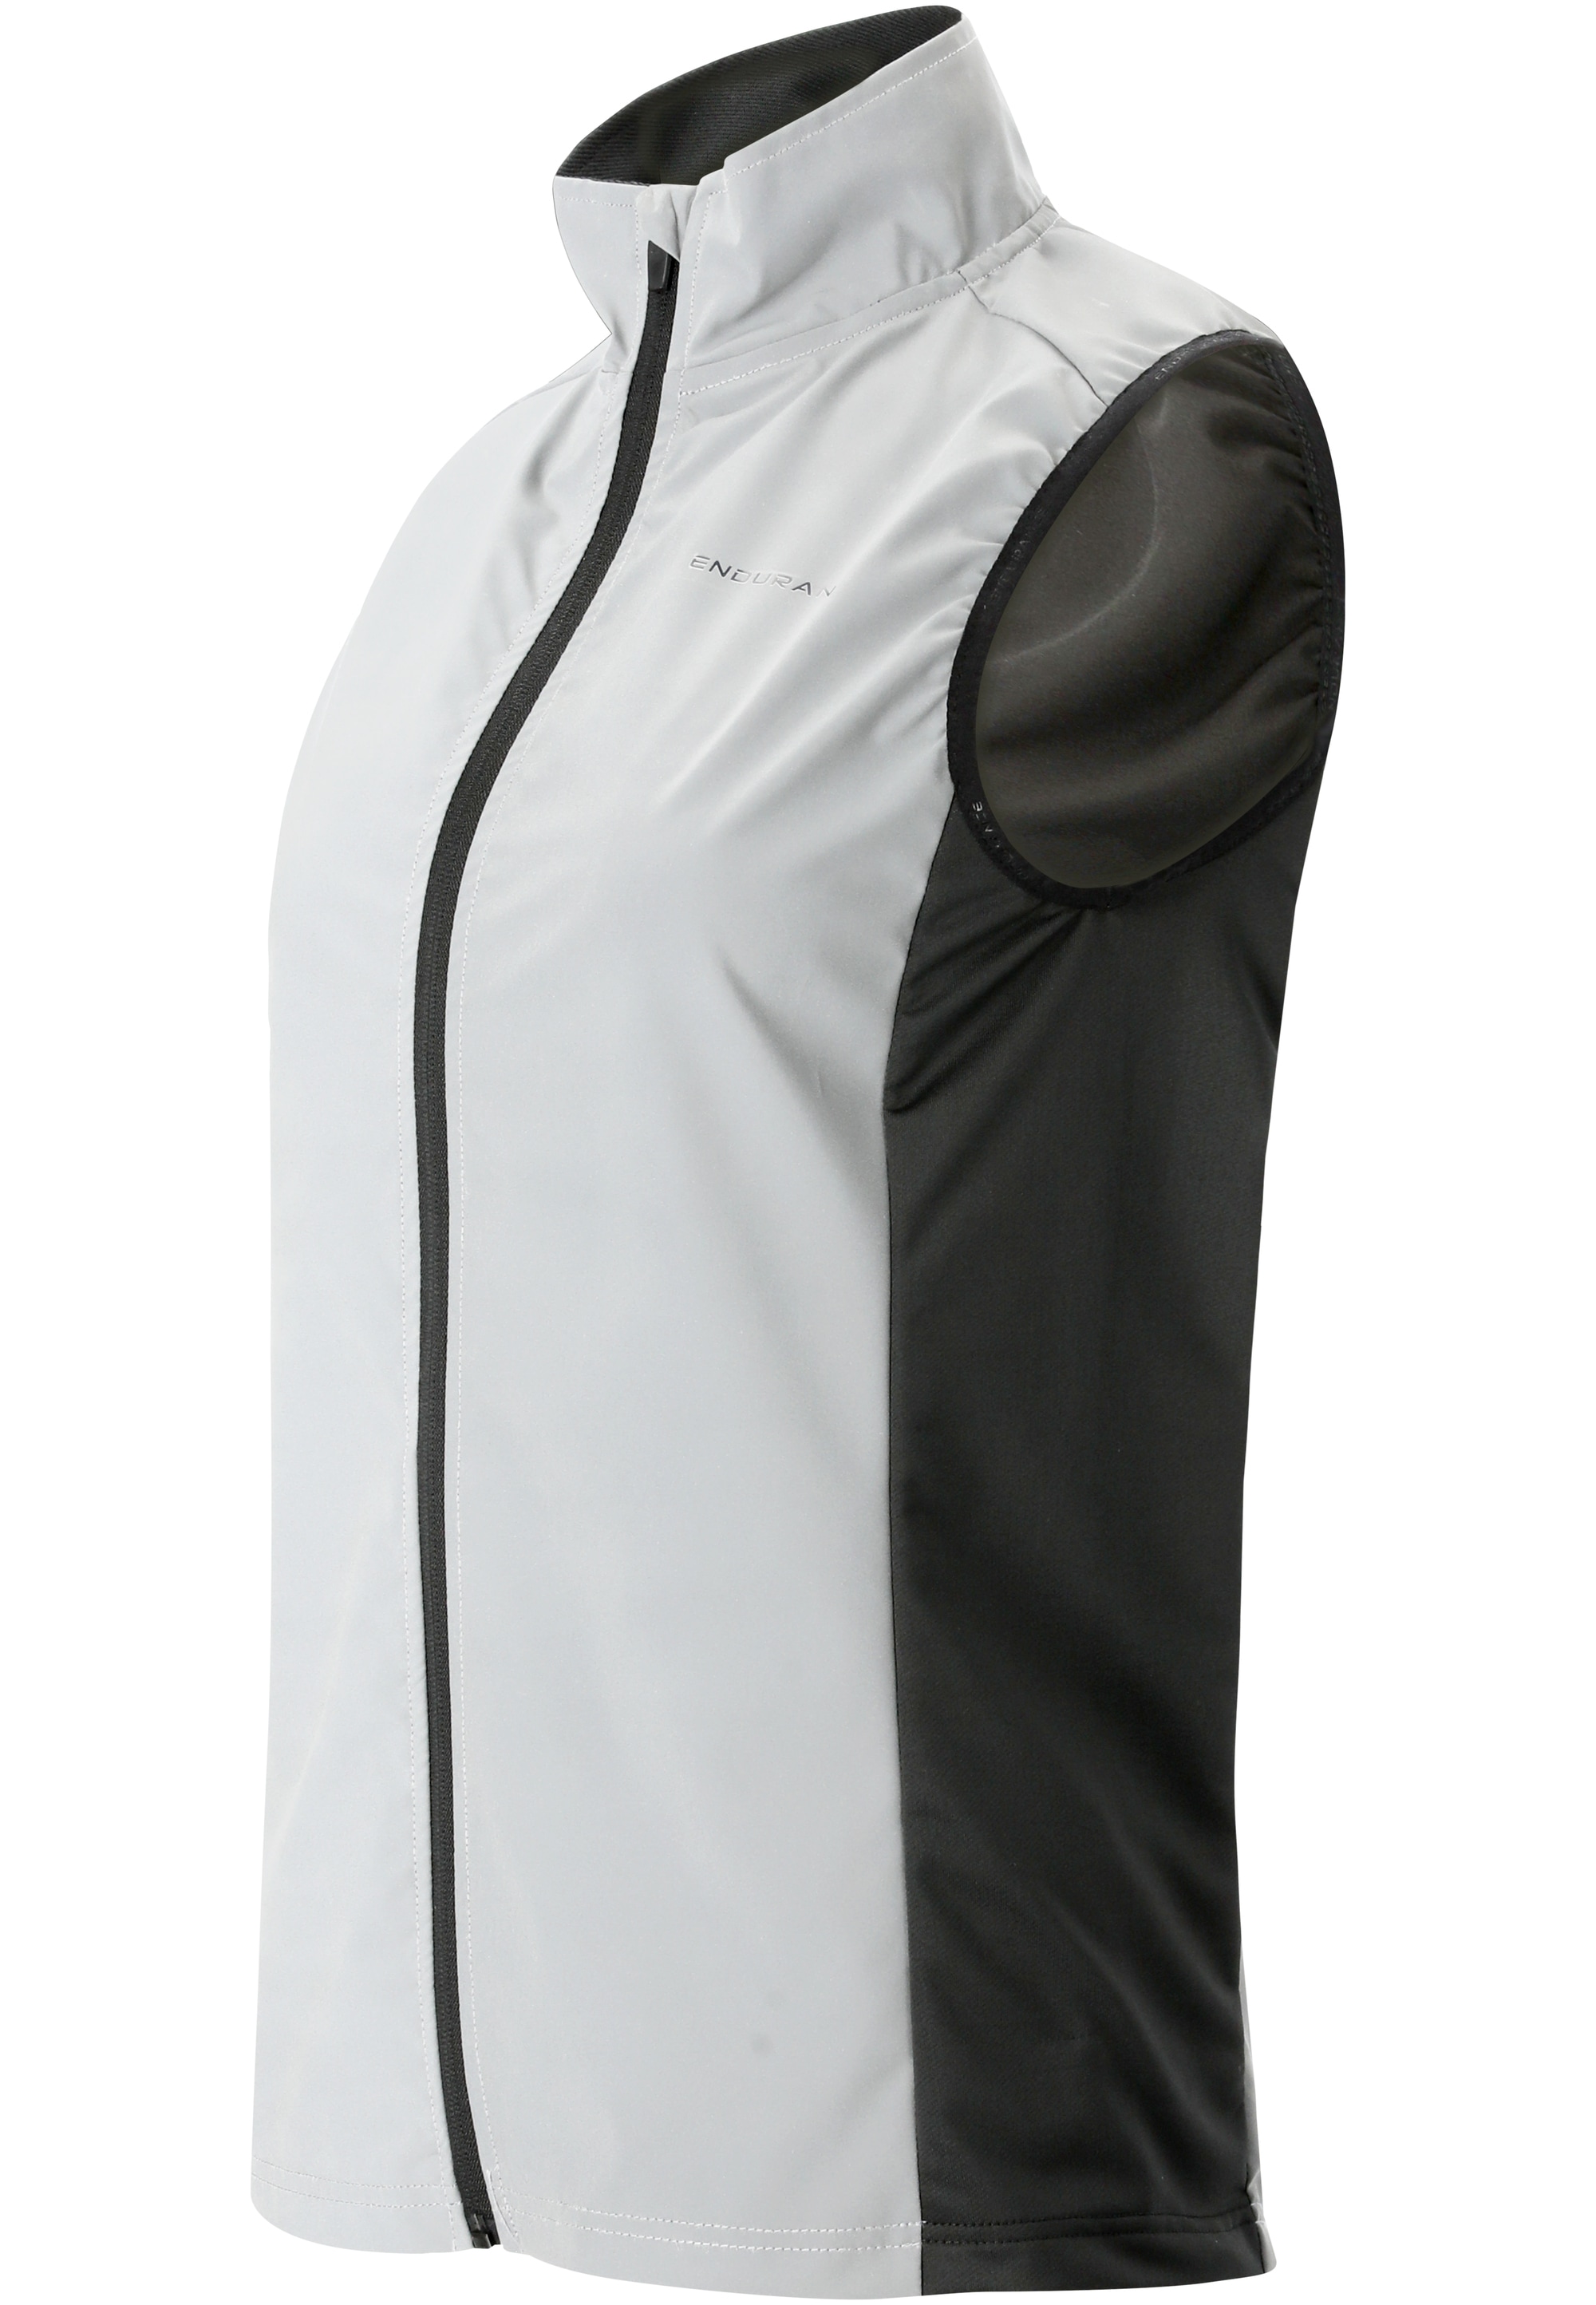 ENDURANCE Funktionsweste »Rumey W Light Night Vest«, mit top 360 Grad Sichtbarkeit im Dunkeln